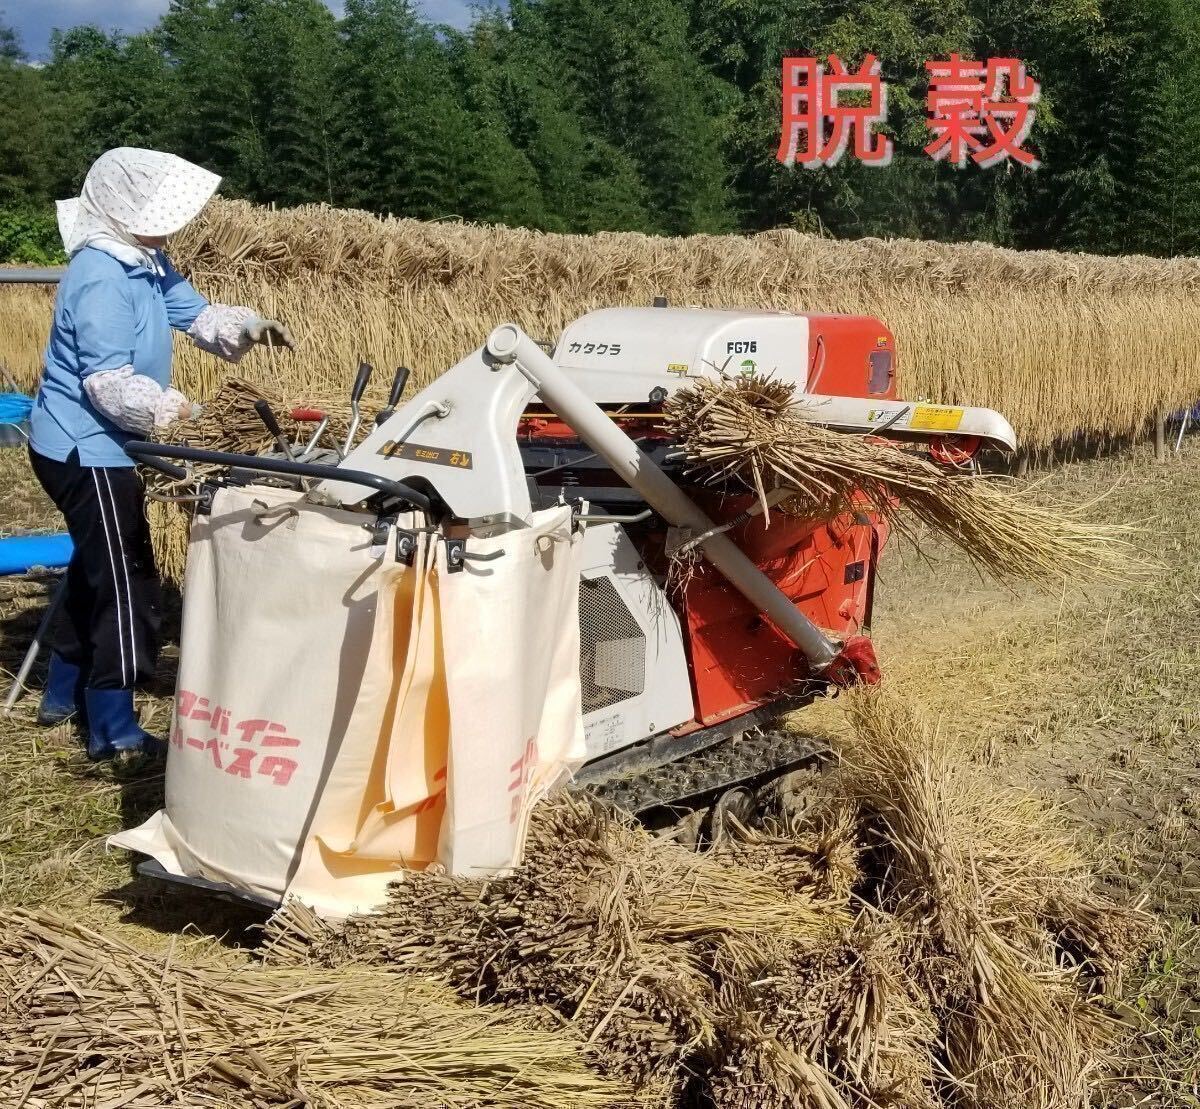 .5 год юг Shinshu производство. ... рис специальный культивирование рис [.. .. .] неочищенный рис 10Kg(. рис сервис )